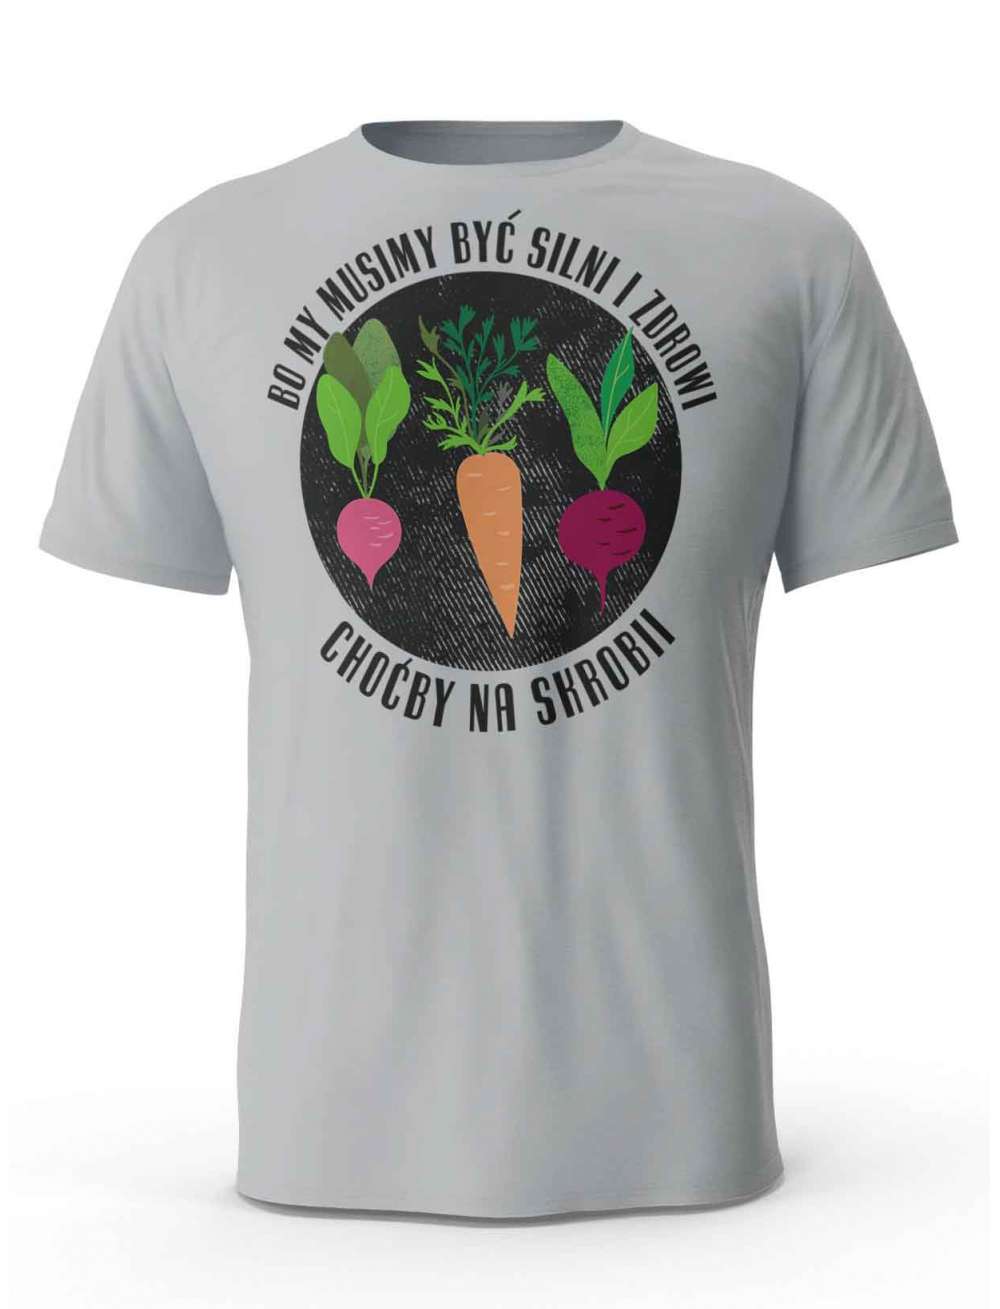 Koszulka Męska, Bo My Musimy Być Silni I Zdrowi, T-shirt Dla Mężczyzny